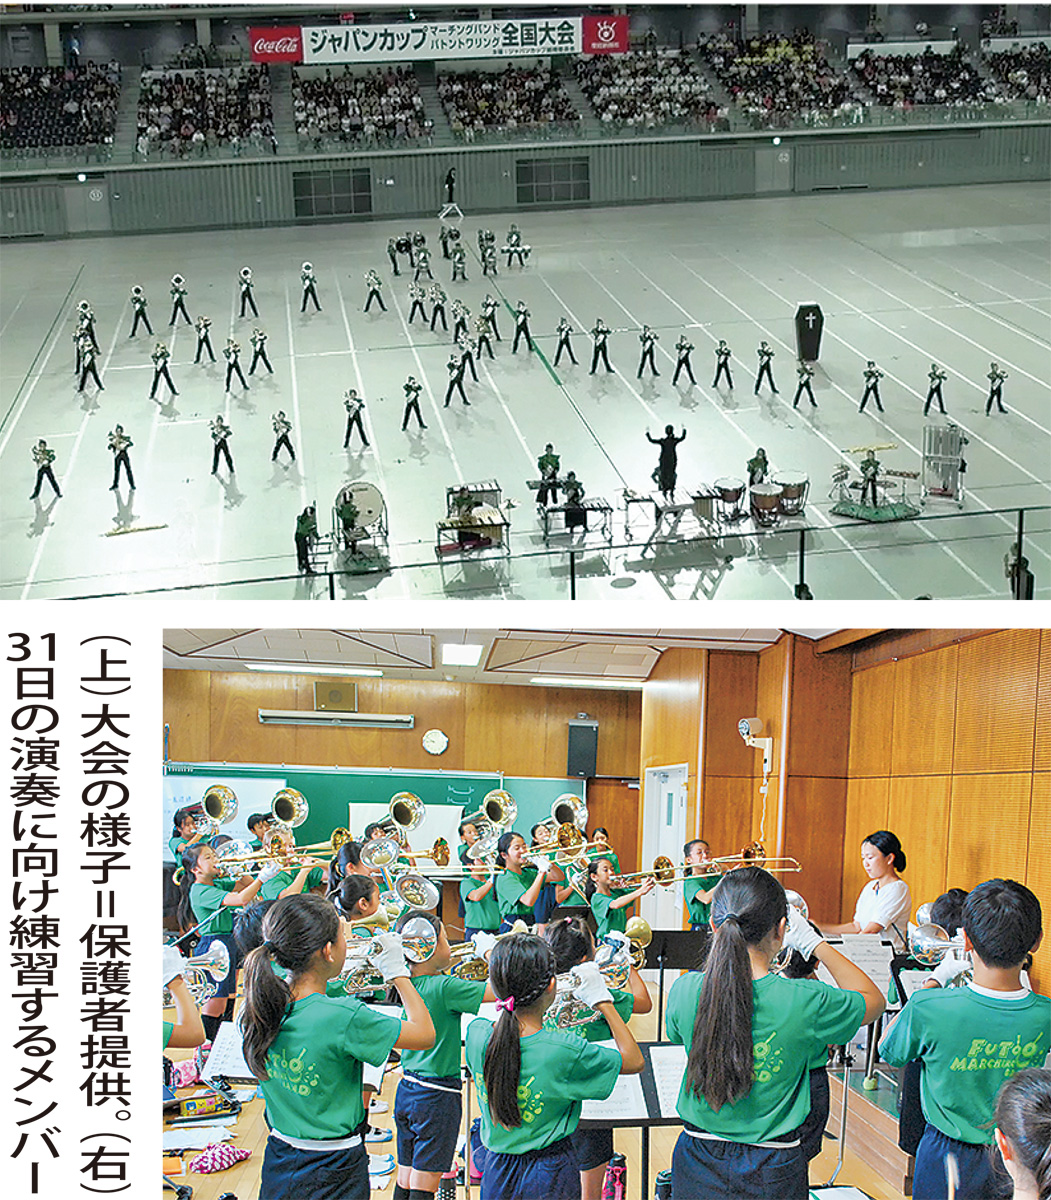 太尾小マーチングバンド 全国の舞台で7連覇 31日、地域で演奏披露 